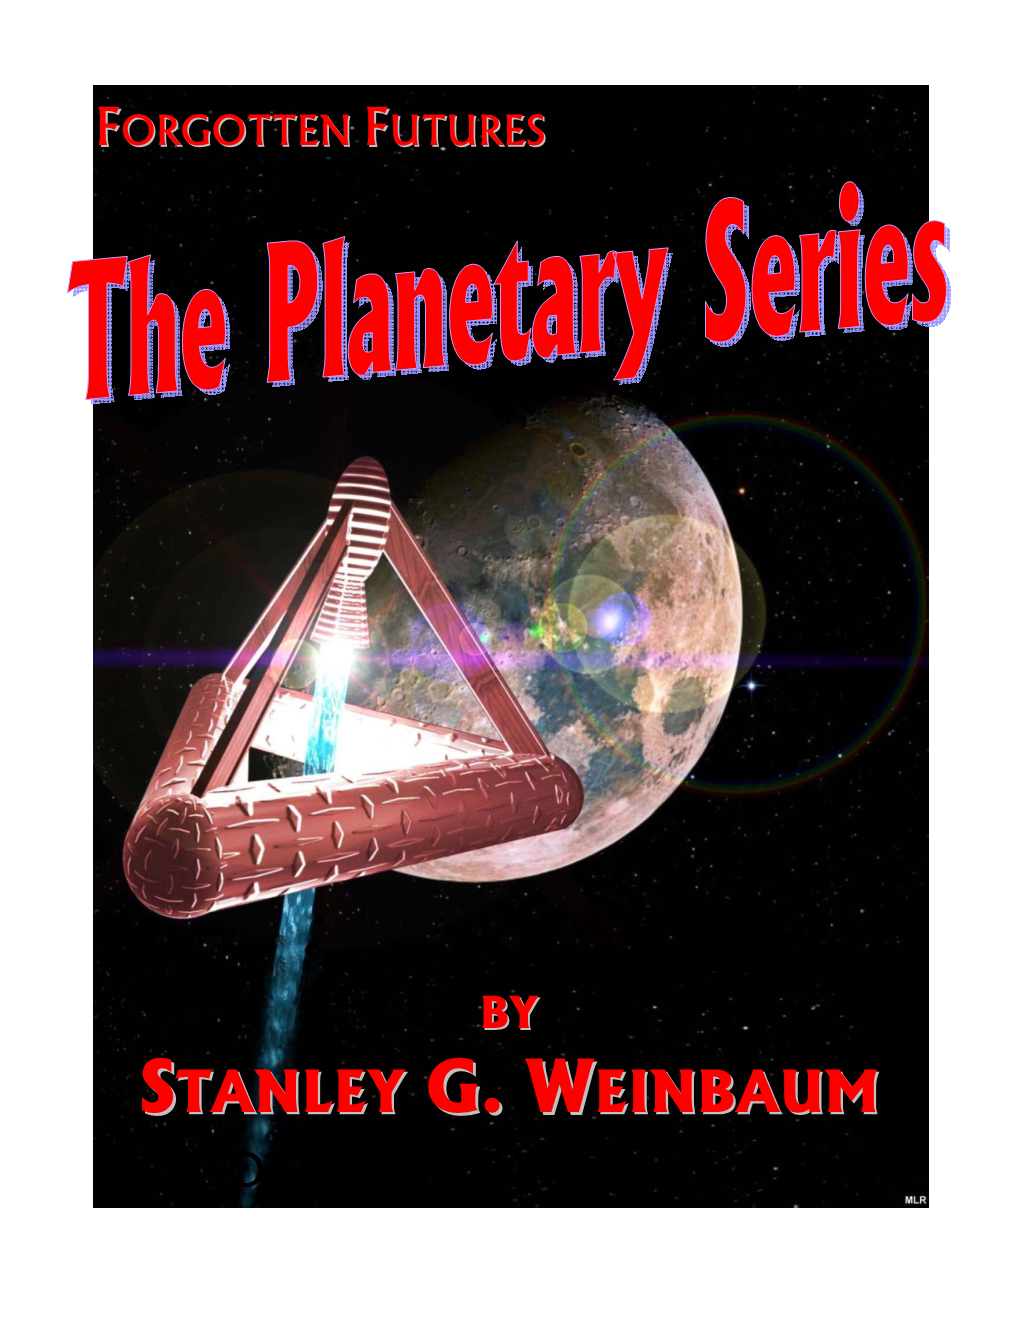 Stanley G. Weinbaum's Planetary Stories